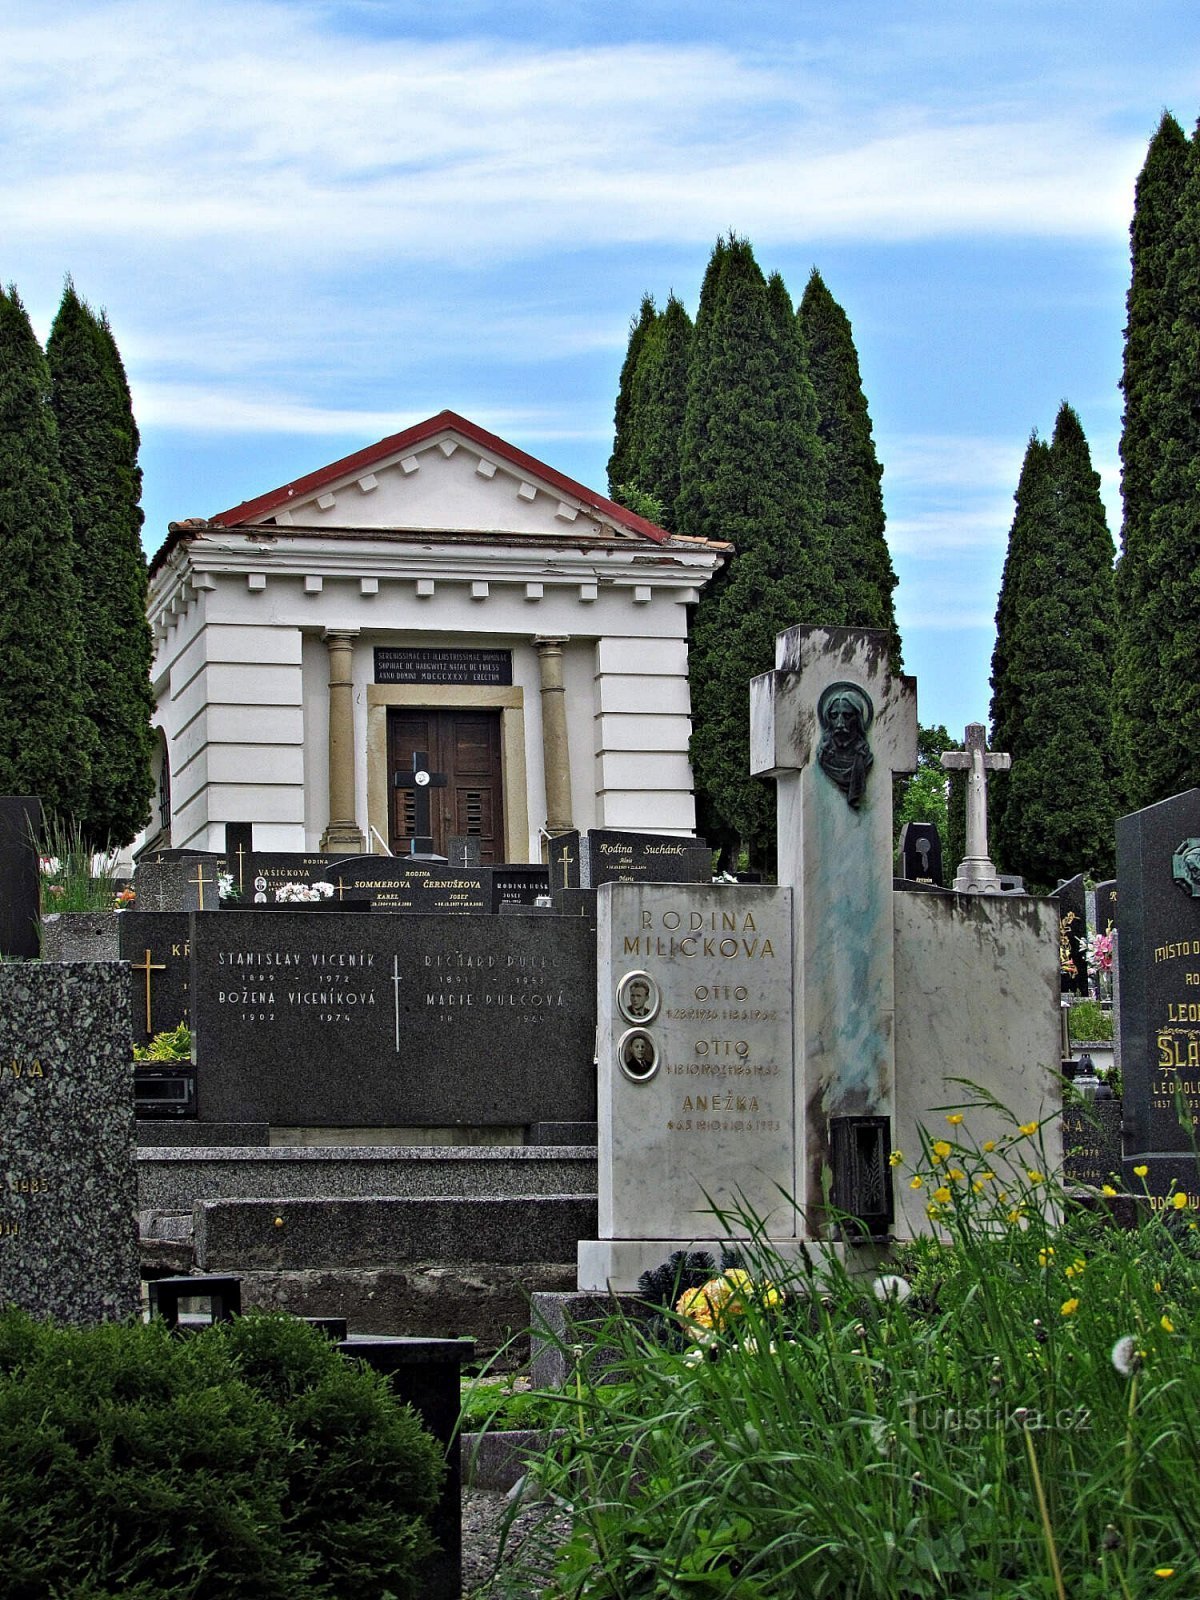 ボイコヴィツェ市墓地